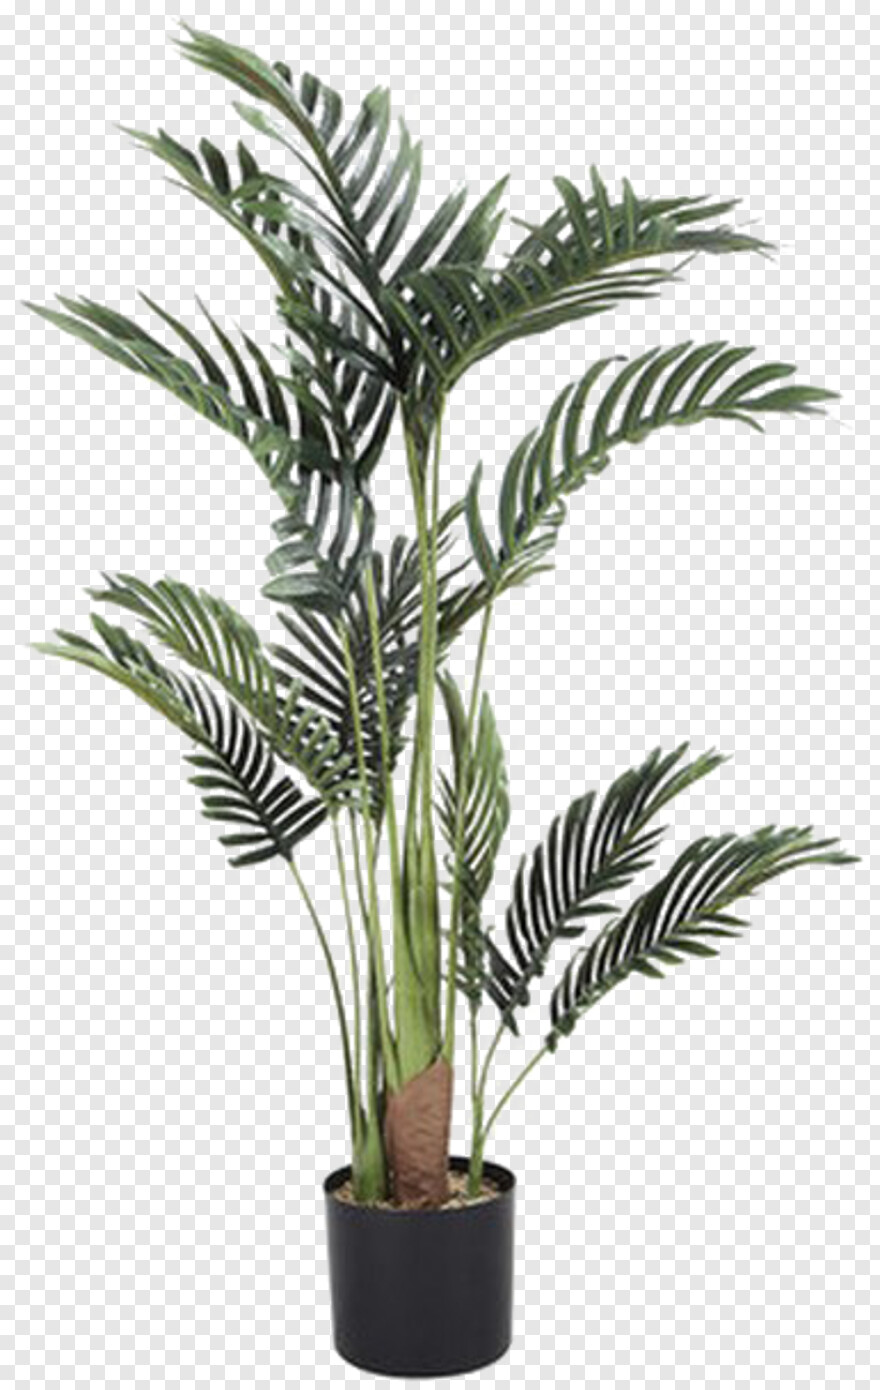 palm-tree # 460837